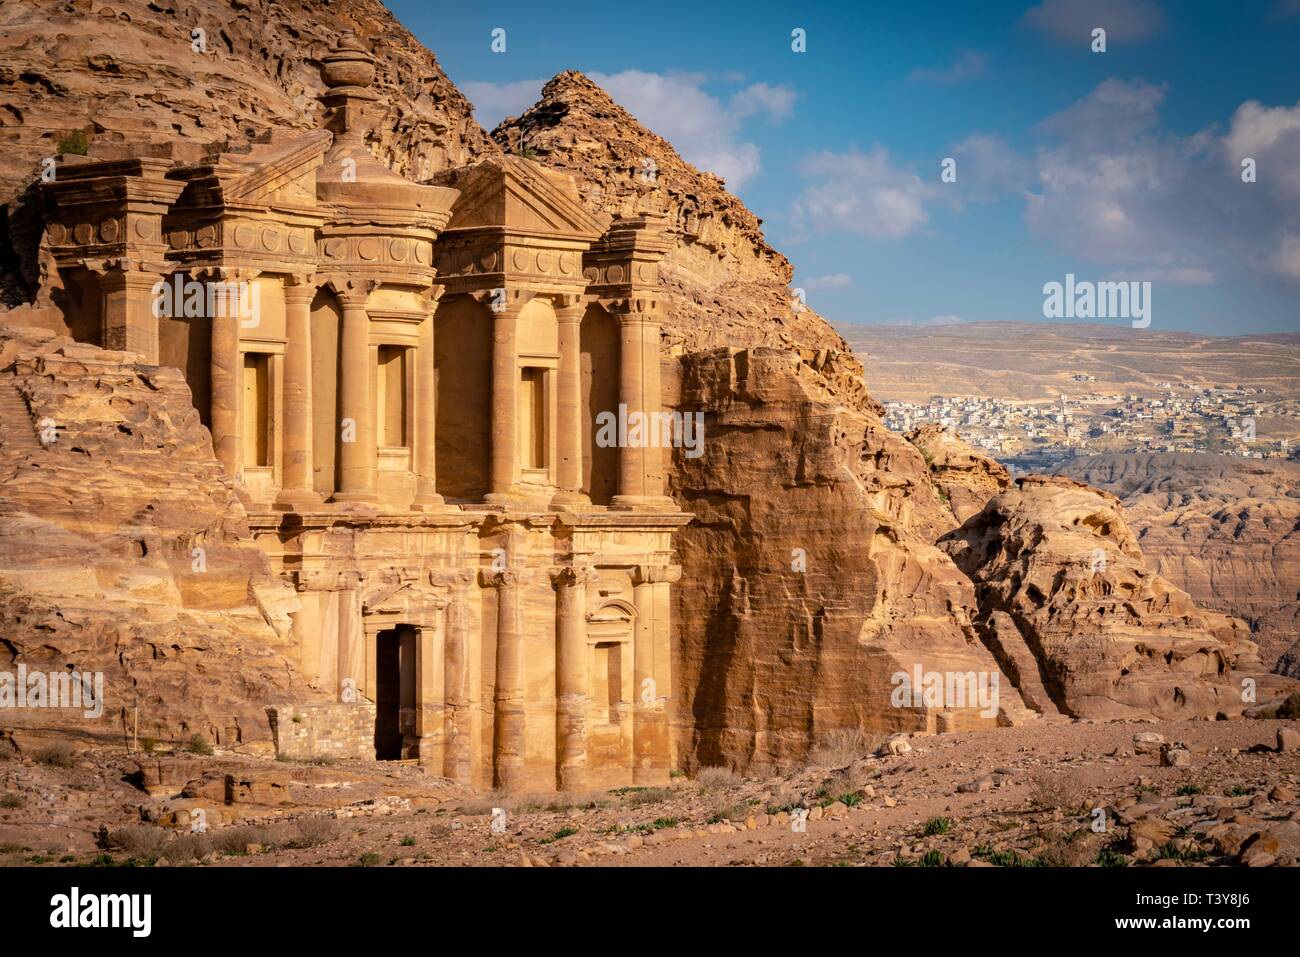 Deir Ad ('Le Monastère' ; Arabe : الدير ), également connu sous le nom d'El Deir, est un bâtiment monumental taillé dans le roc dans l'antique cité de Pétra en Jordanie. Banque D'Images